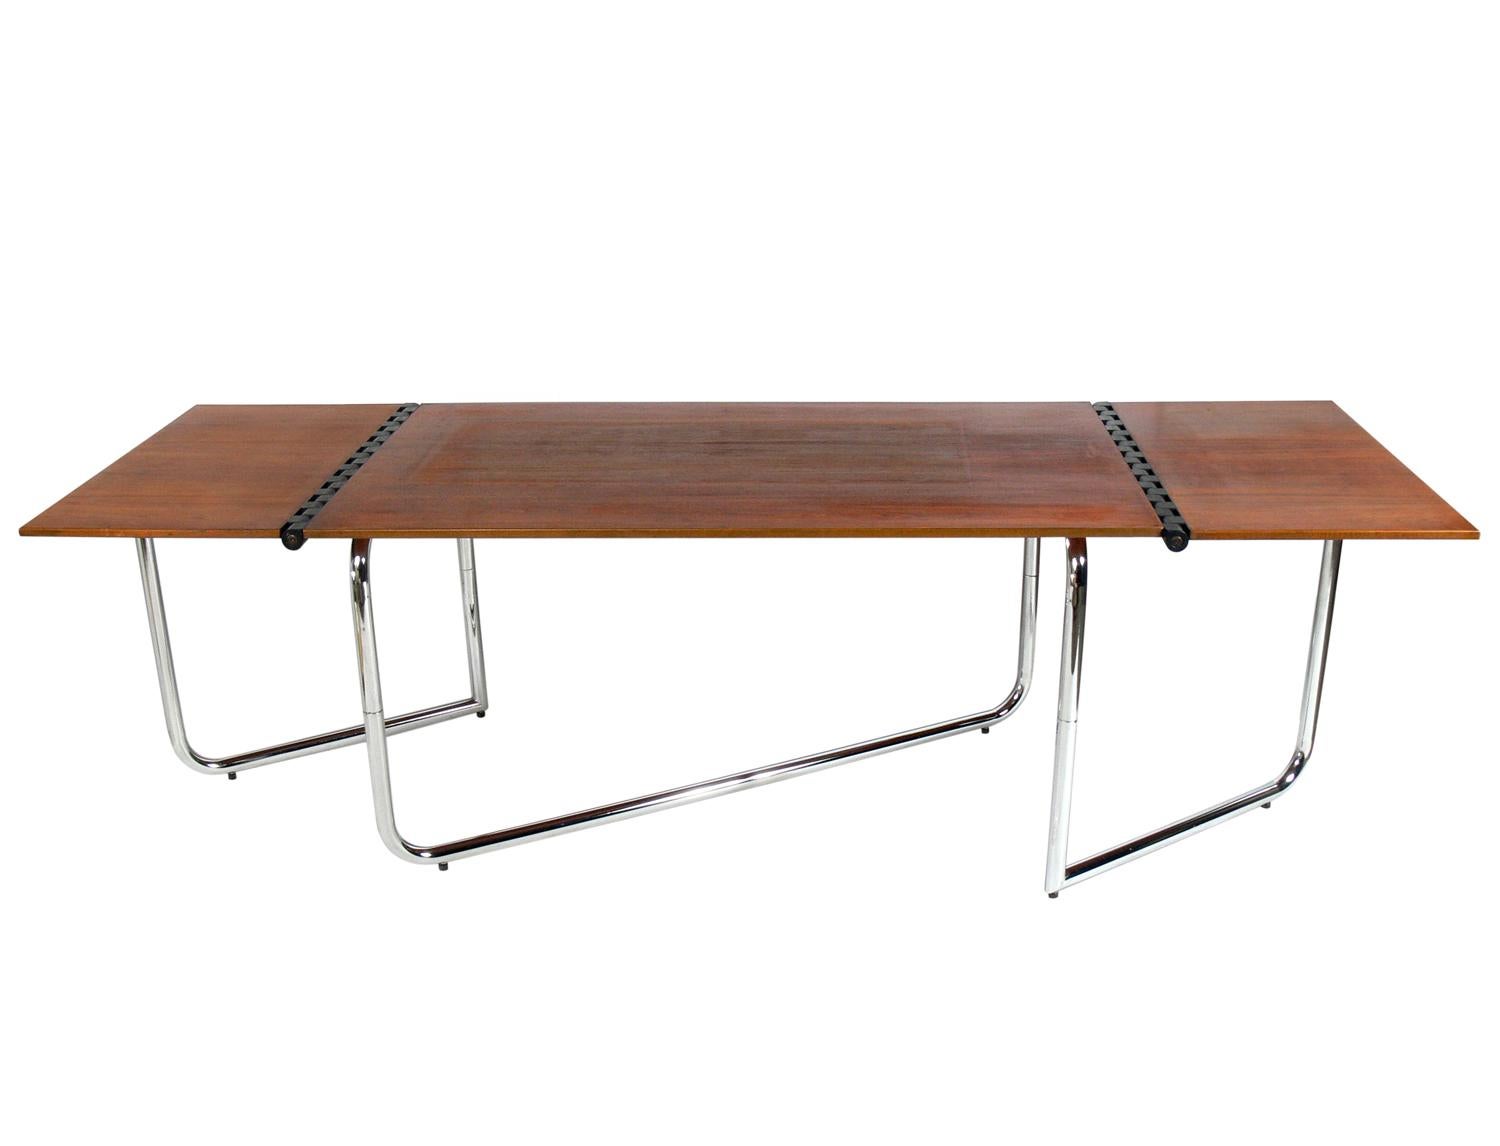 Italienischer Esstisch oder Schreibtisch mit Klappe, Italien, um 1970. Interessante Klapptischlerarbeiten auf beiden Seiten. Dies wäre die perfekte Größe für eine Wohnung in New York City, da es als Schreibtisch oder Esstisch mit den Klappblättern